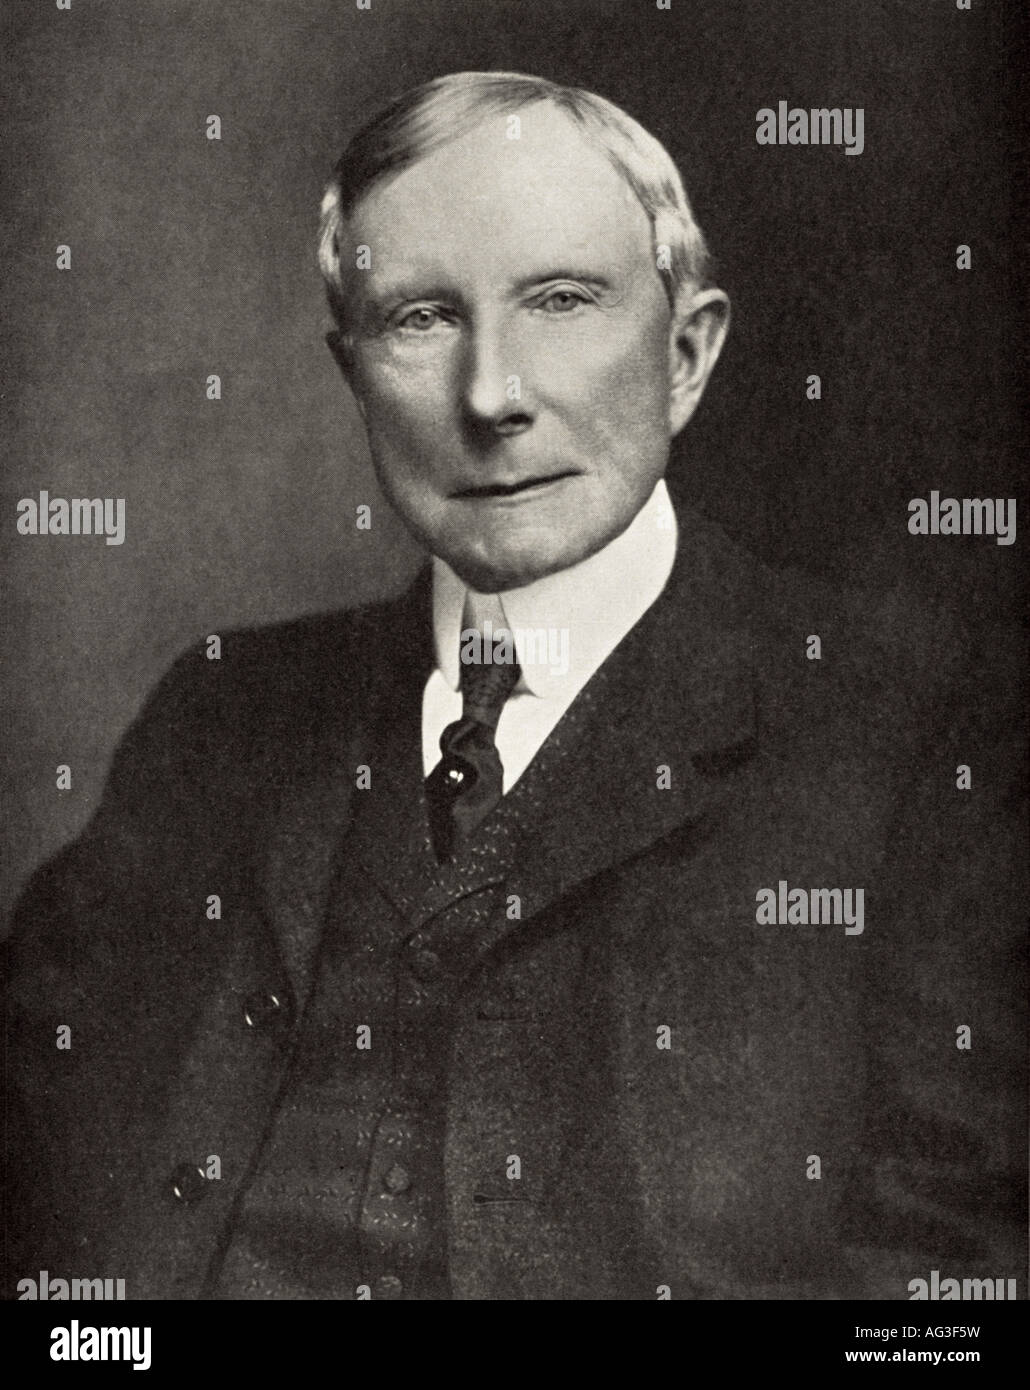 JOHN D. ROCKEFELLER - magnat du pétrole américain et philanthrope en 1935 Banque D'Images